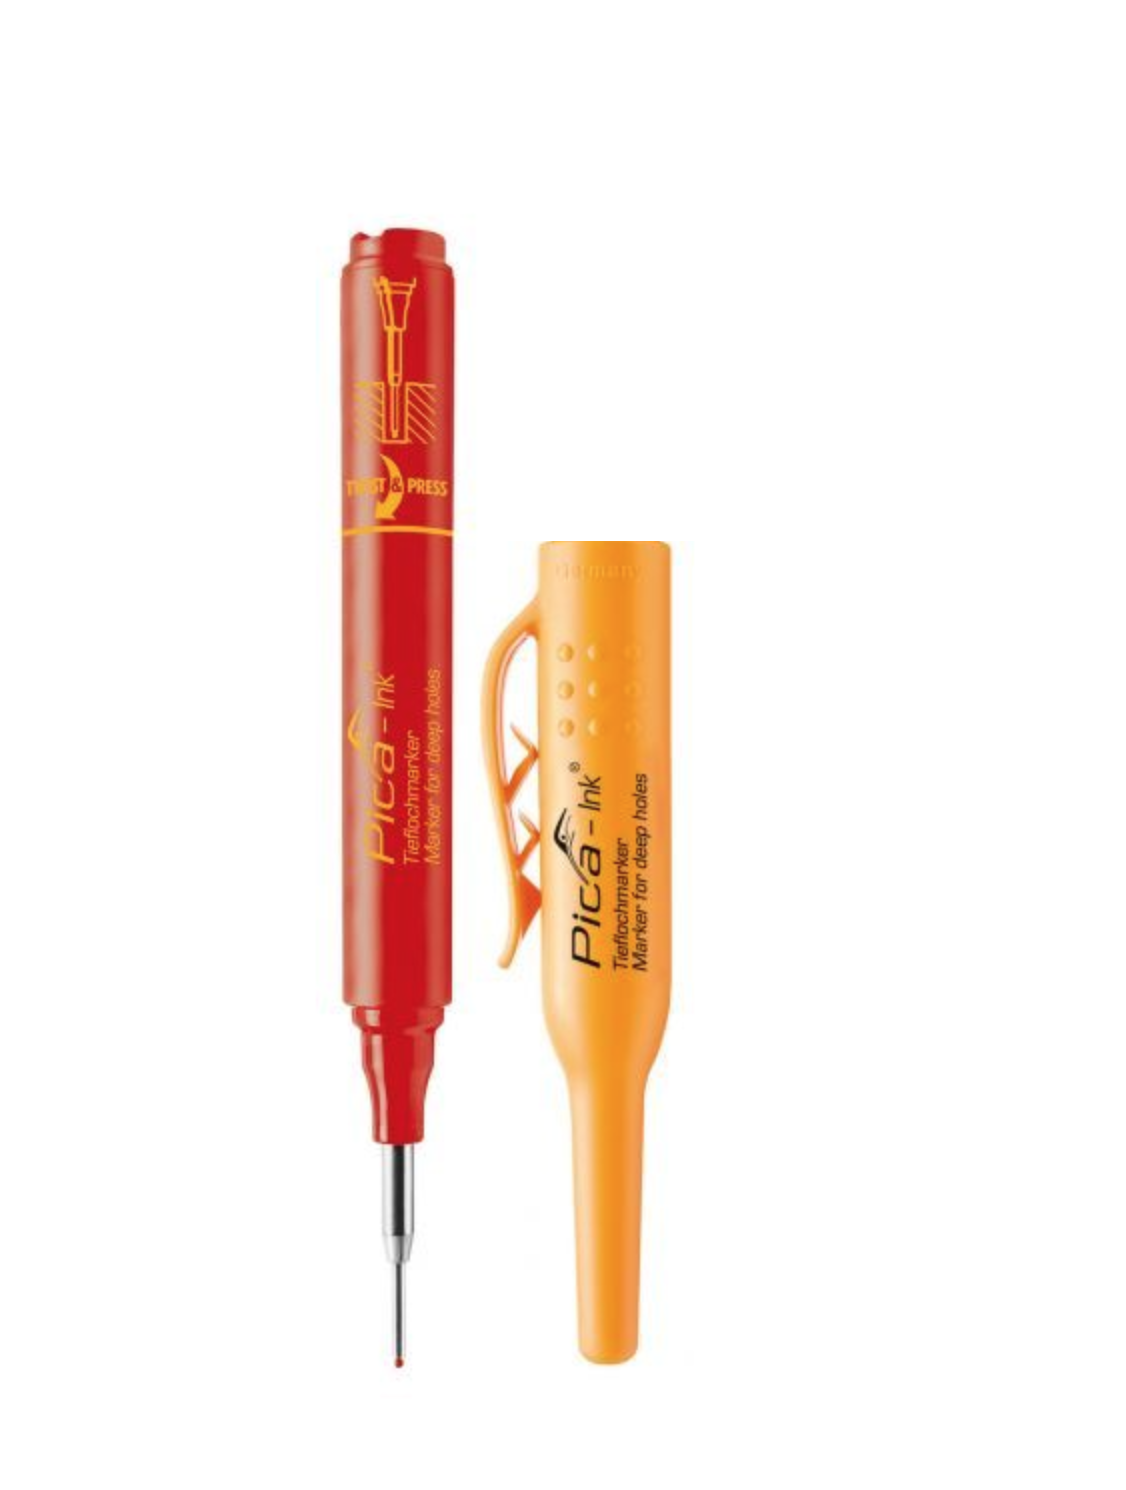 Строительный маркер для глубоких отверстий Pica-Ink (Красный) PICA-MARKER 150/40 маркер для электриков artline 0 4 1 0 мм electricians marker оранжевый ekpelft 197